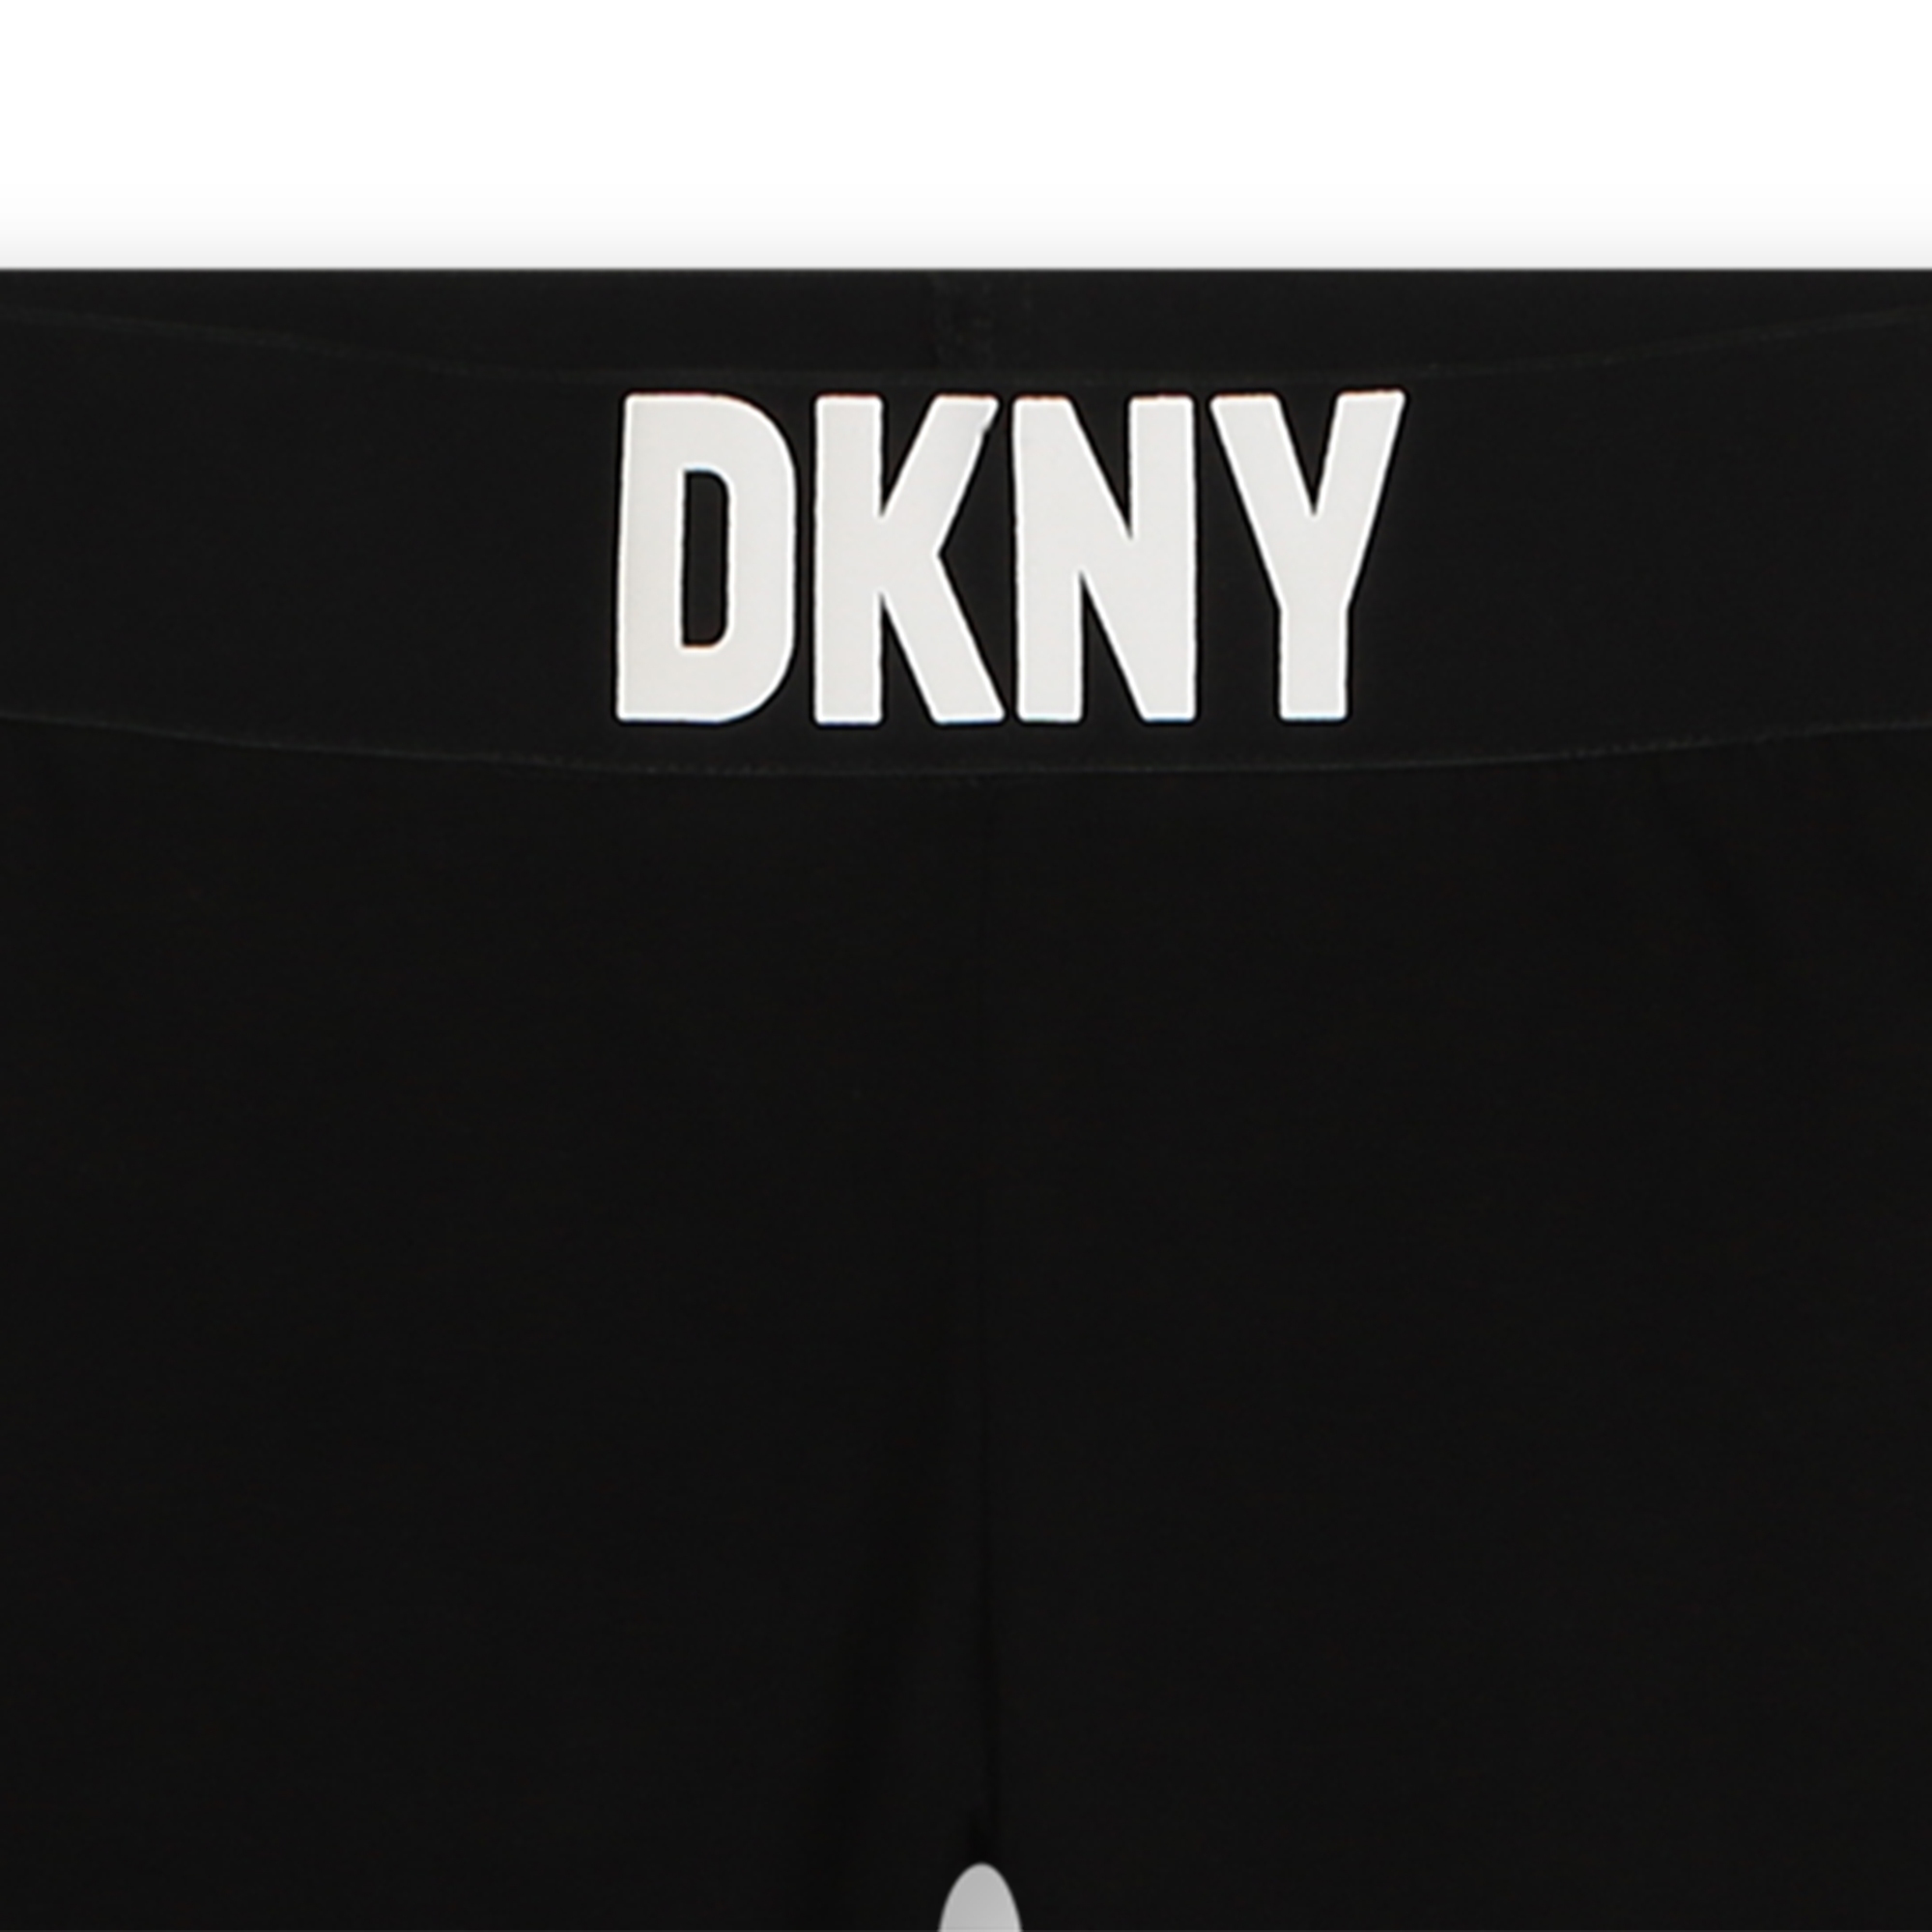 Cotton leggings DKNY for GIRL